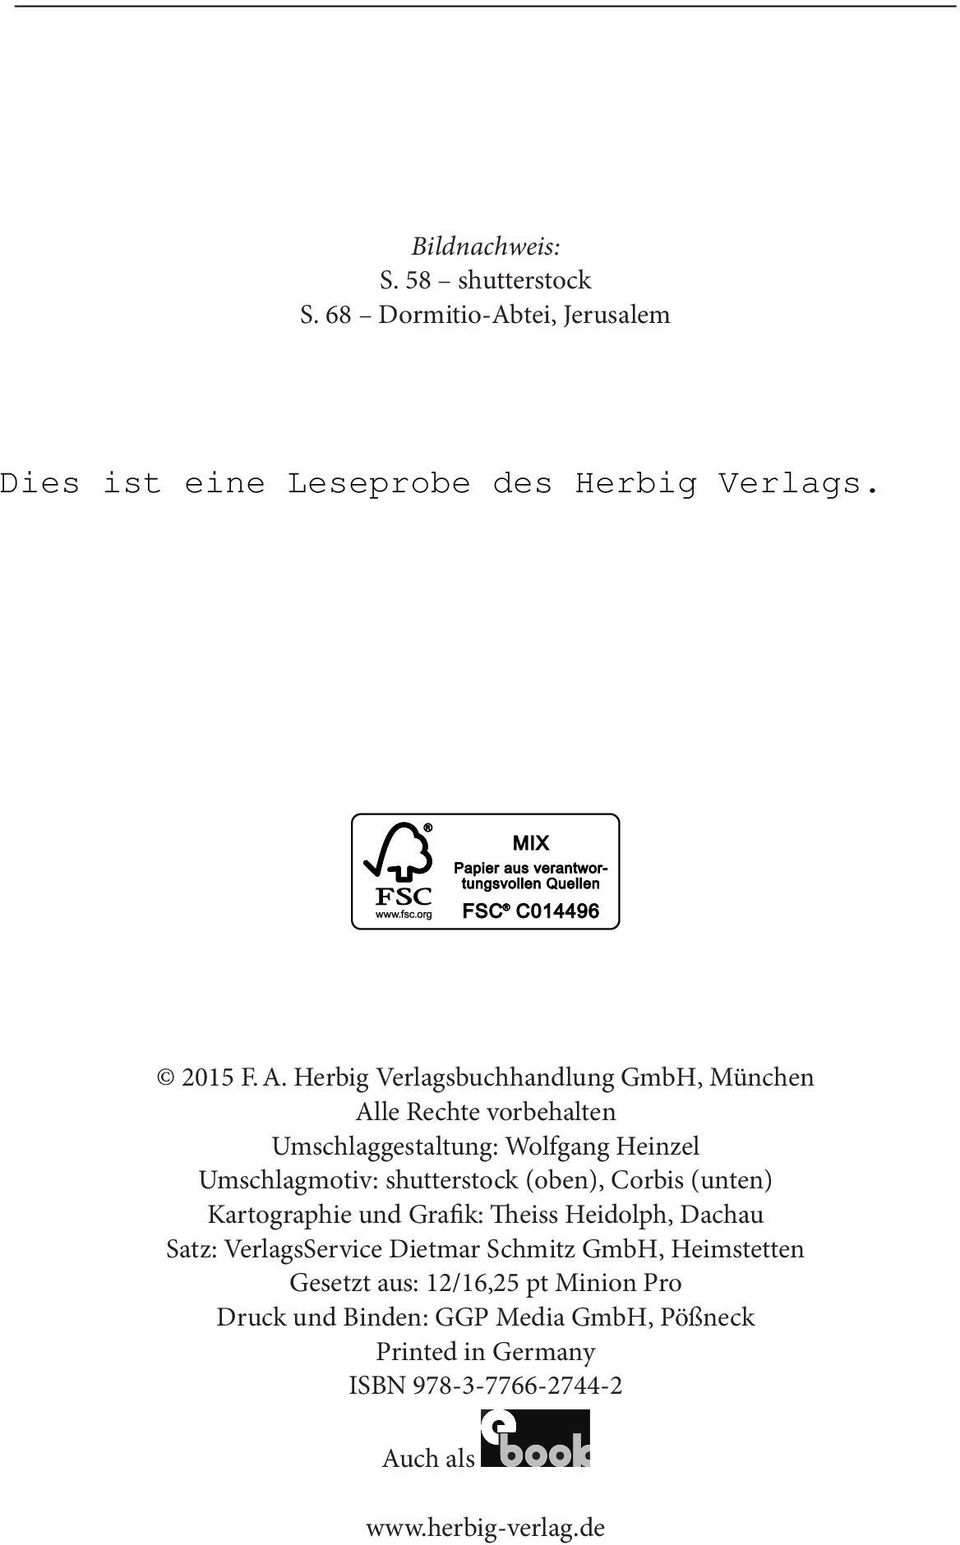 shutterstock (oben), Corbis (unten) Kartographie und Grafik: Theiss Heidolph, Dachau Satz: VerlagsService Dietmar